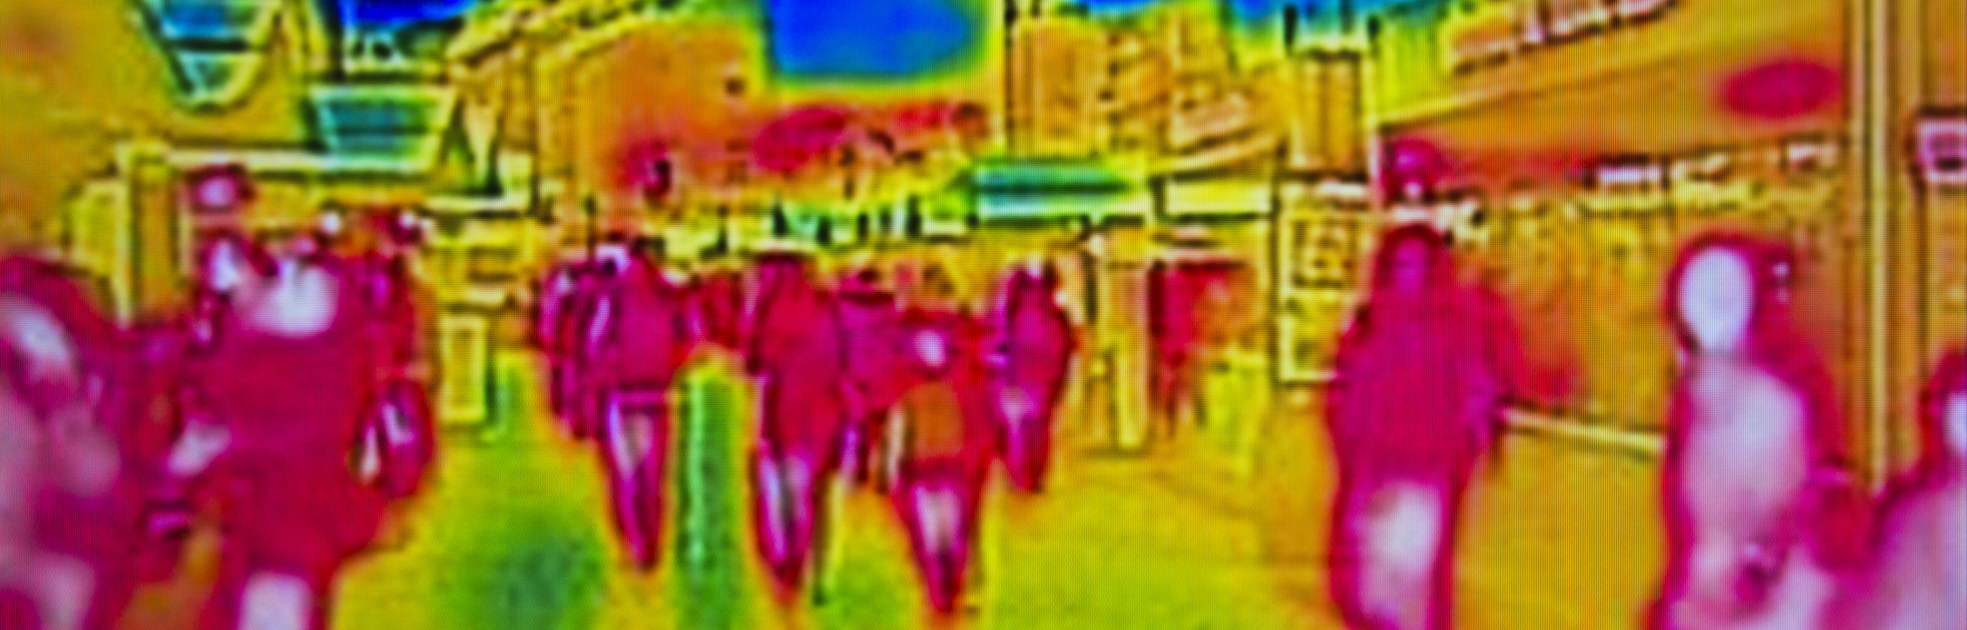 heat map of street scene